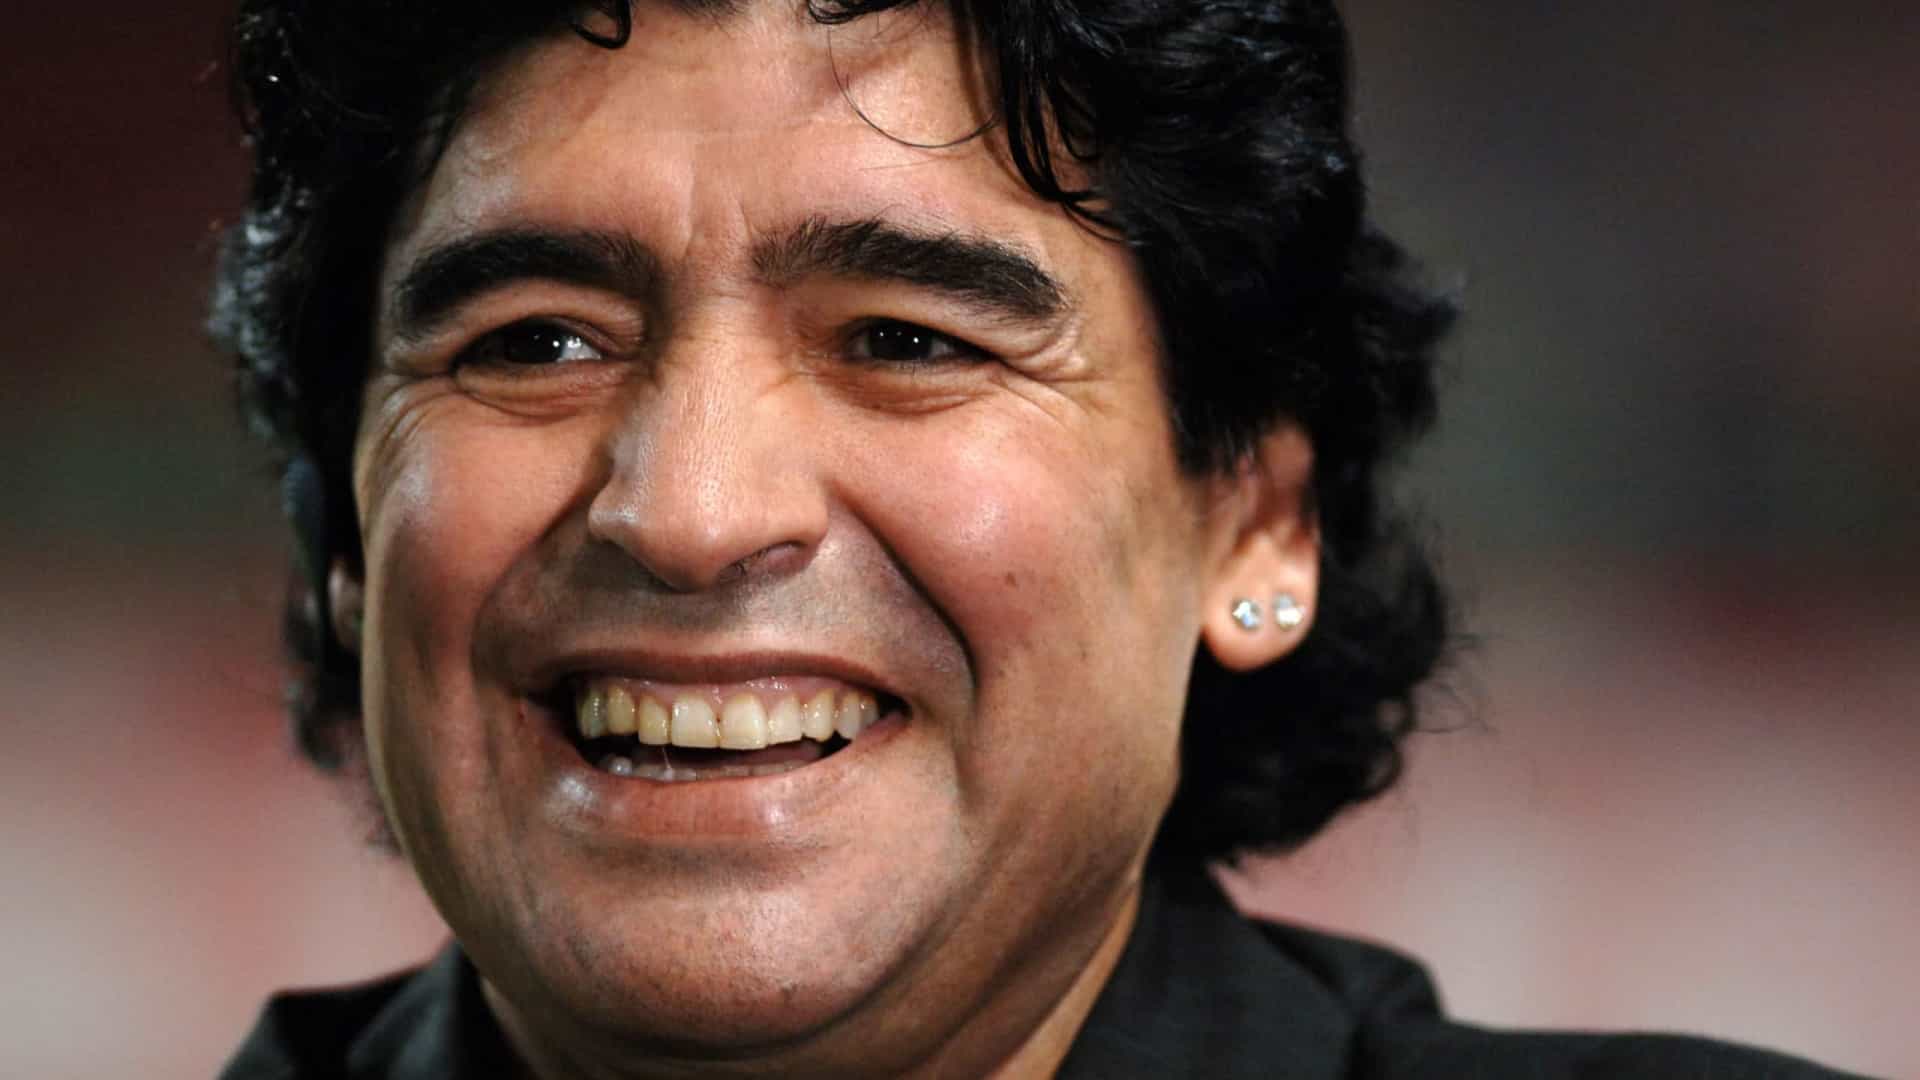 Amigos de infância relembram travessuras e sonhos de Maradona